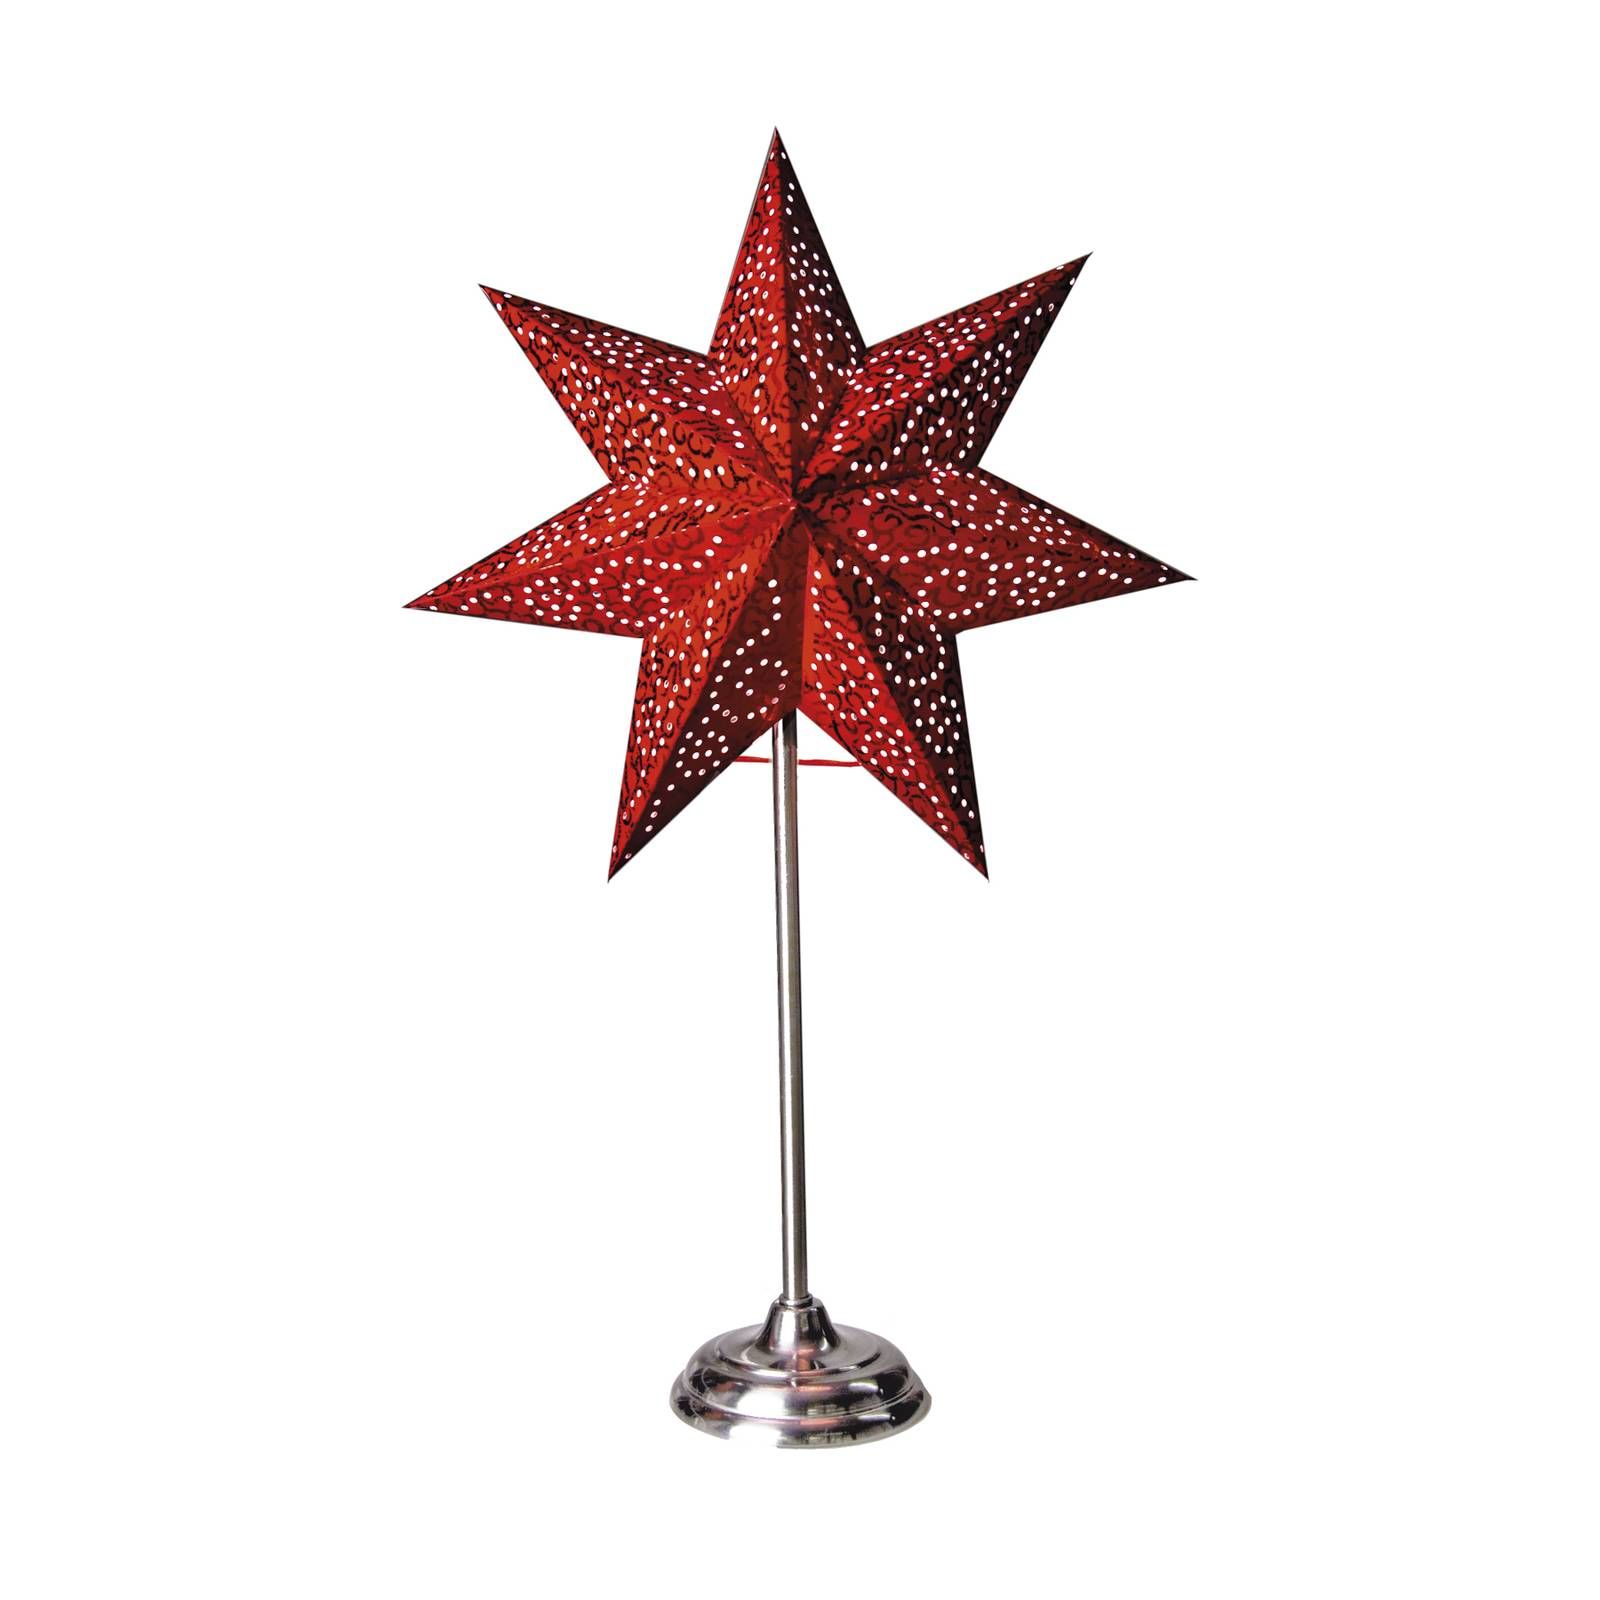 STAR TRADING Stojacia hviezda Antique, kov/papier, červená, kov, papier, E14, 25W, L: 34 cm, K: 55cm